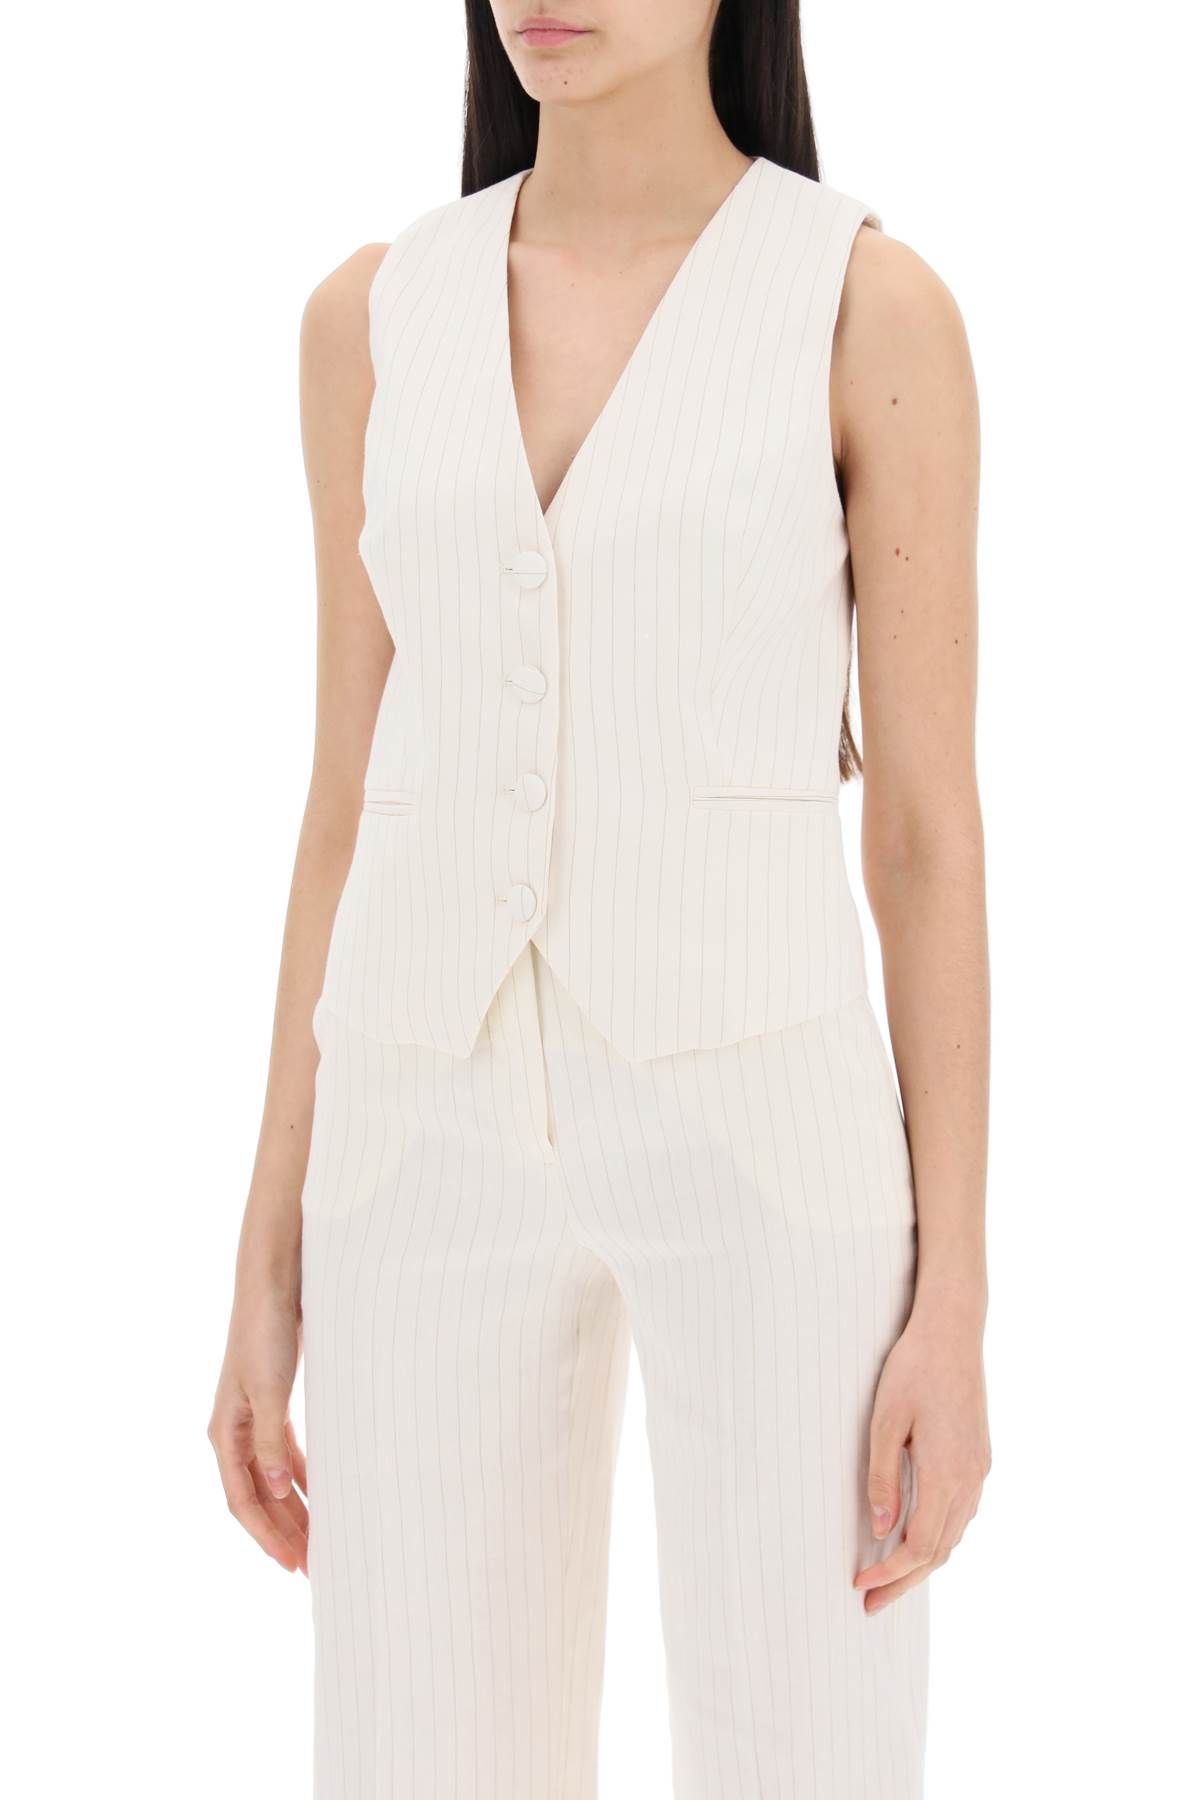 Shop Mvp Wardrobe Monaco Single-breasted In White,neutro